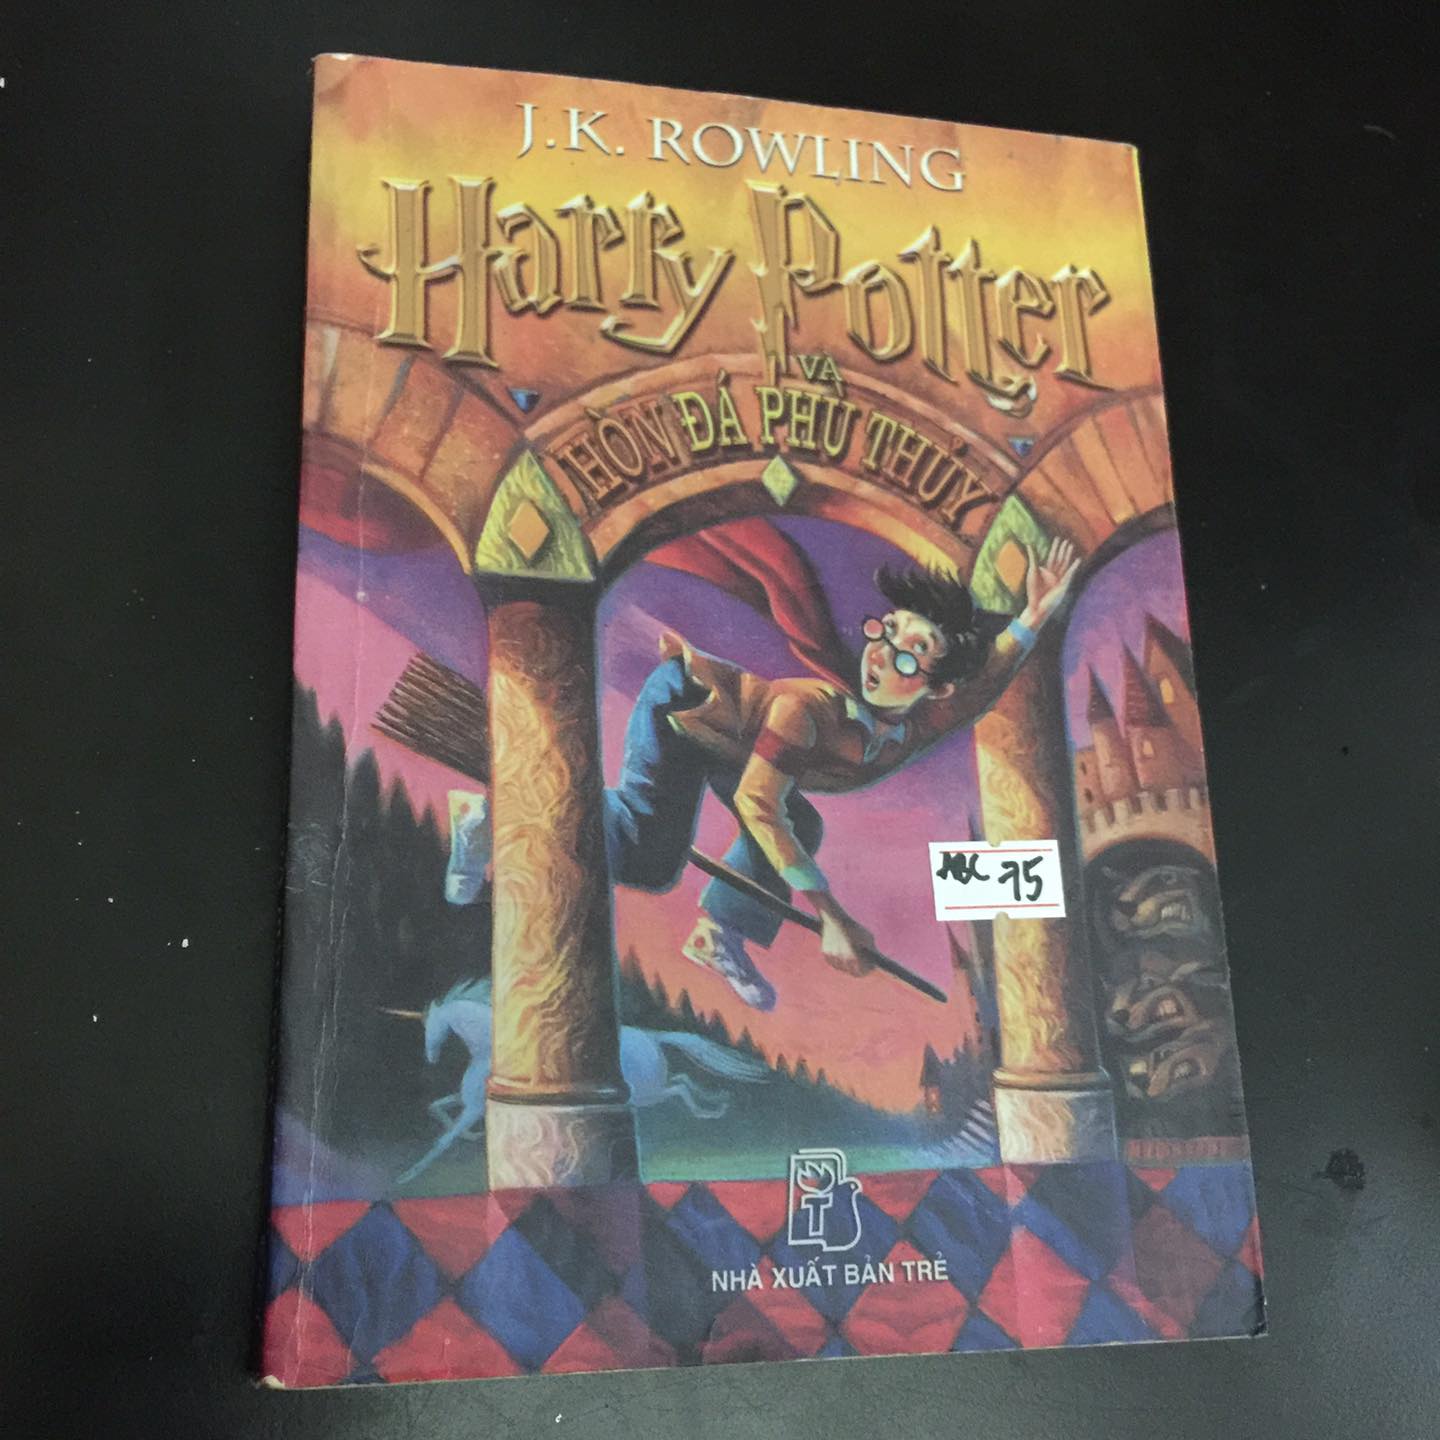 Harry Potter: Hãy đến và khám phá hành trình phù thủy của Harry Potter, người đã được rất nhiều người yêu thích trên khắp thế giới. Chúng ta sẽ được thảo luận về những tác phẩm hấp dẫn bạn không nên bỏ lỡ!